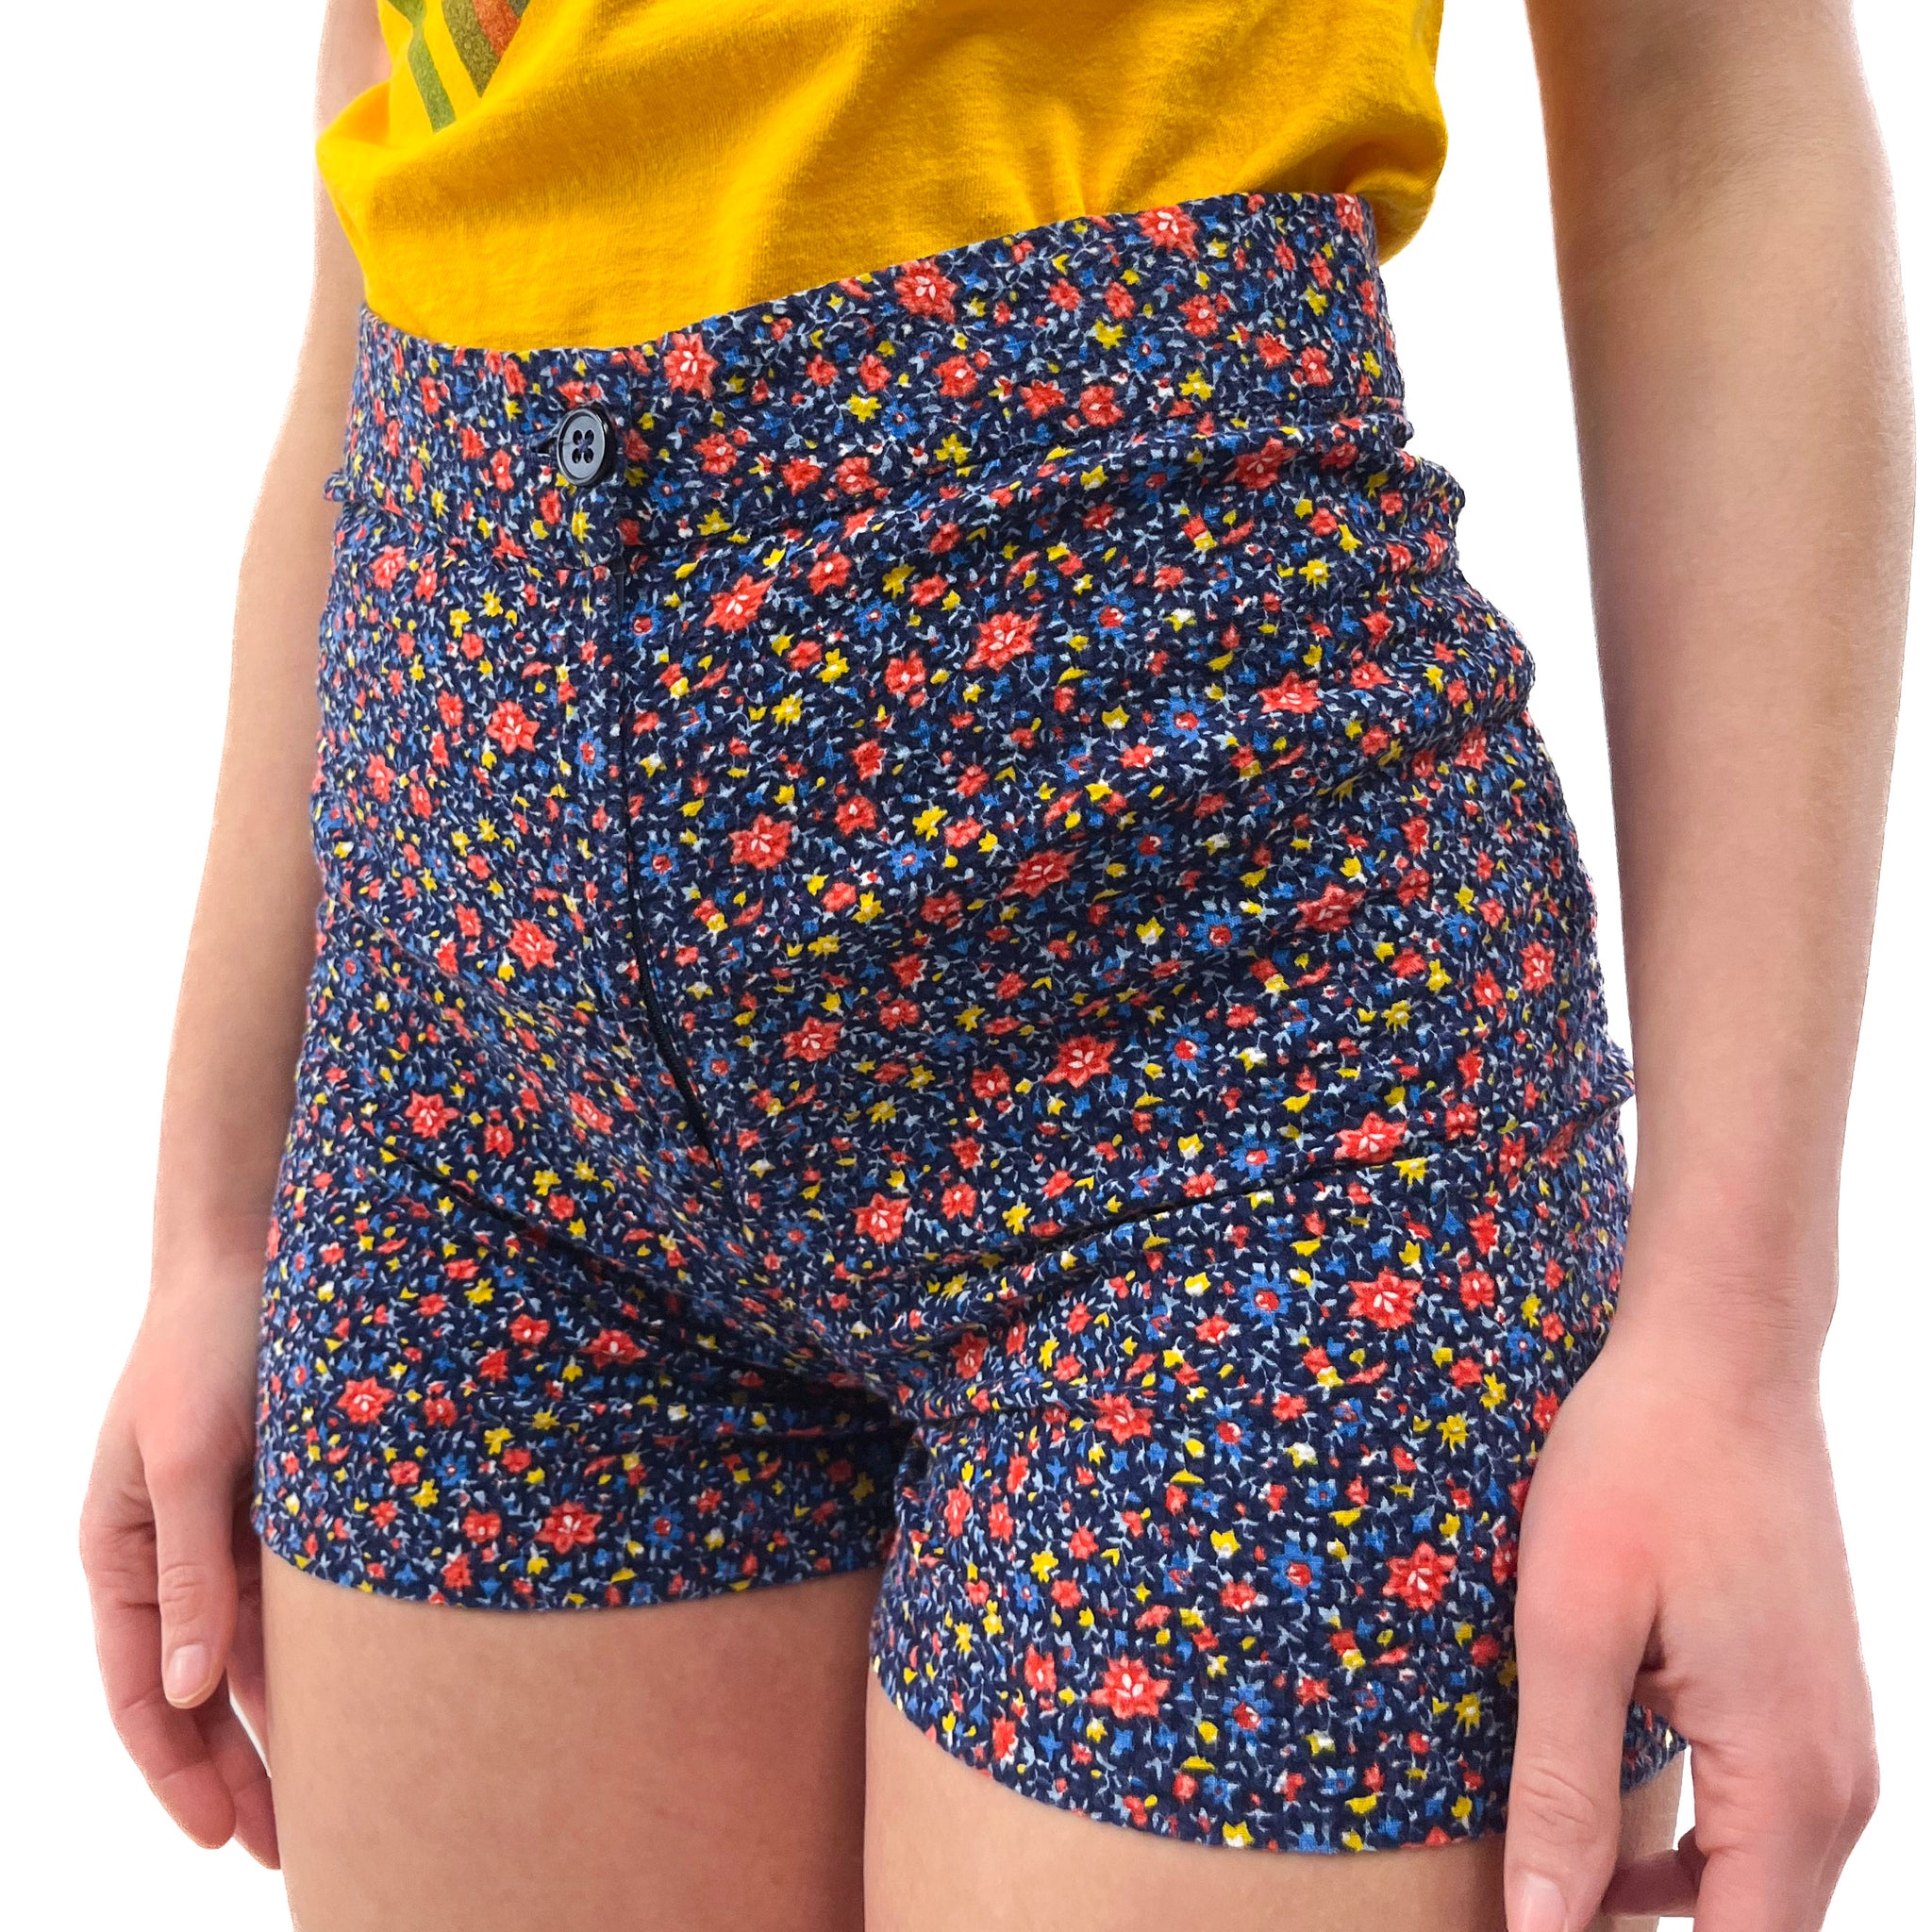 70s Handmade Flower Booty Shorts